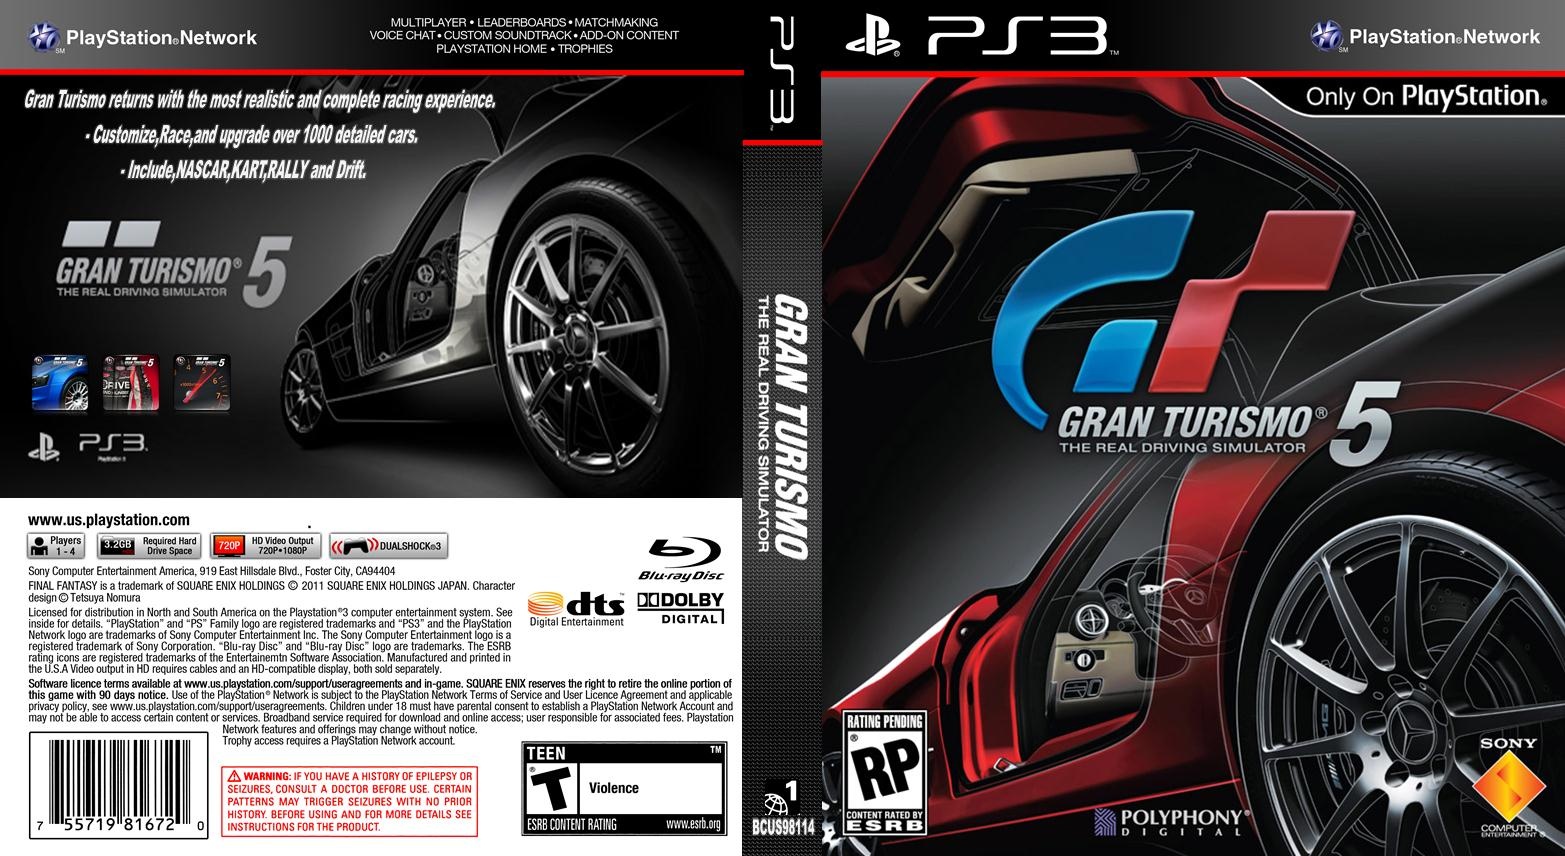 Gran Turismo 5 semi original box cover